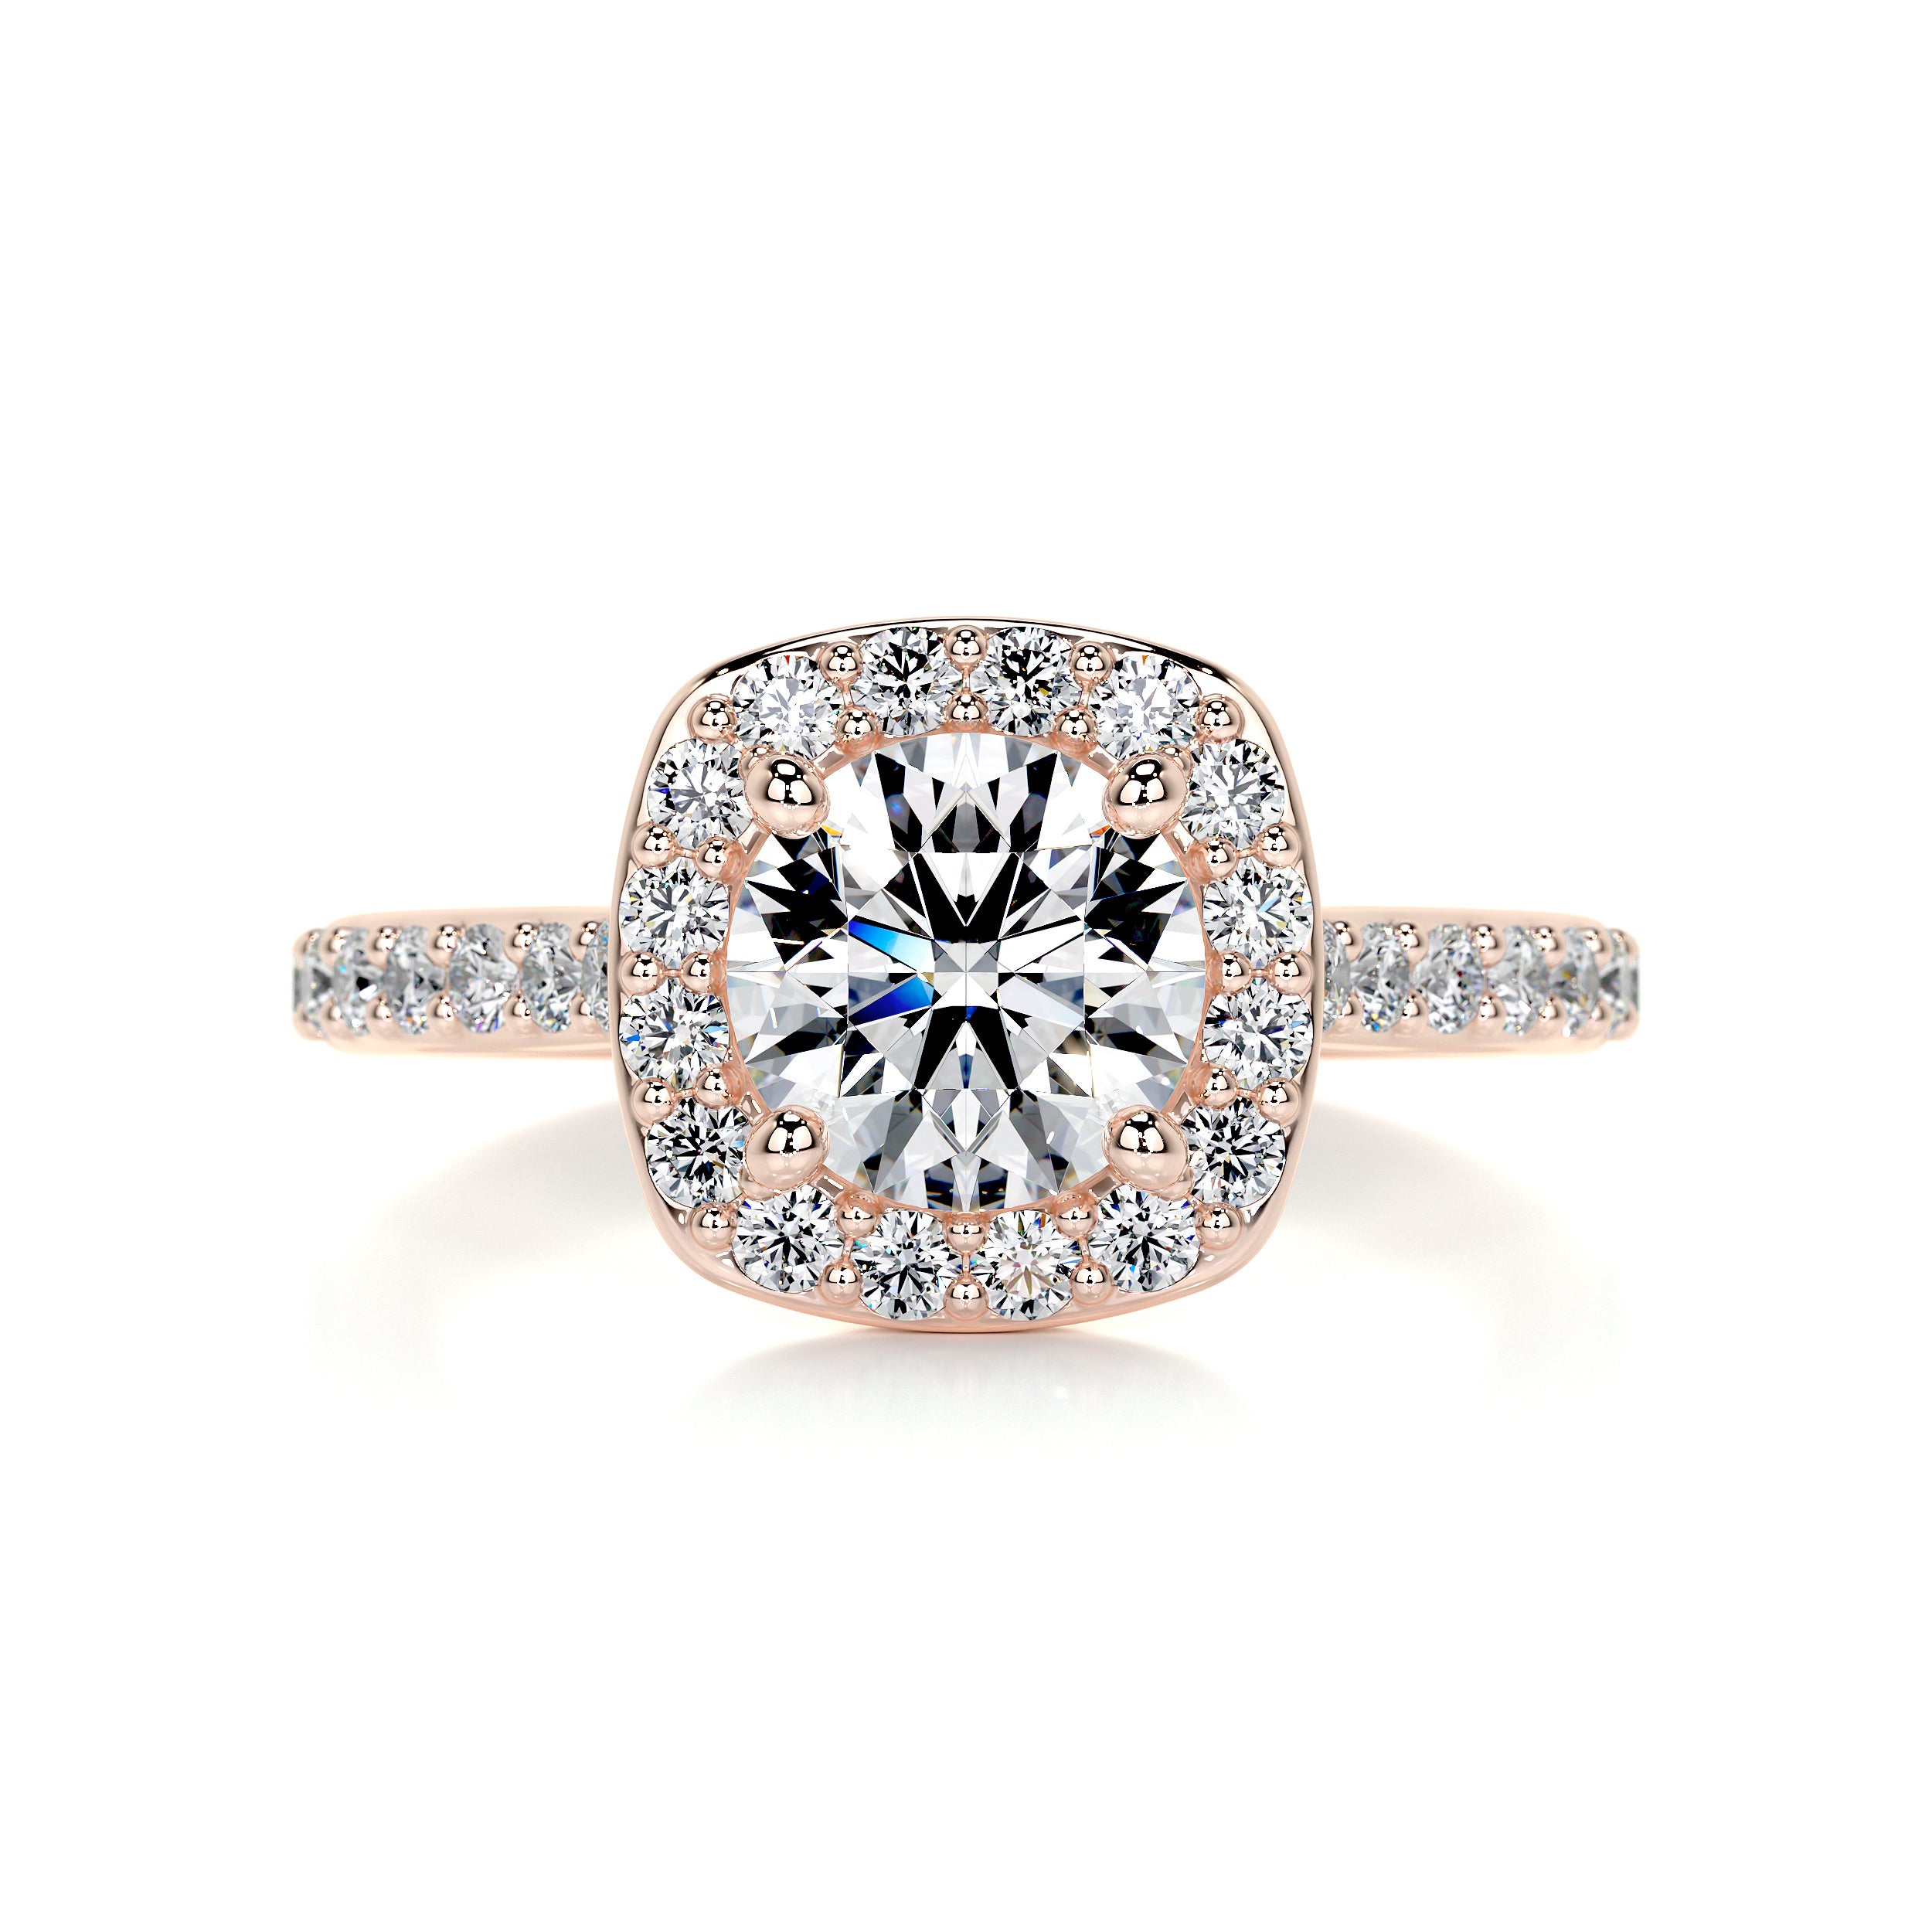 Paisley Diamond Engagement Ring   (2 Carat) -14K Rose Gold